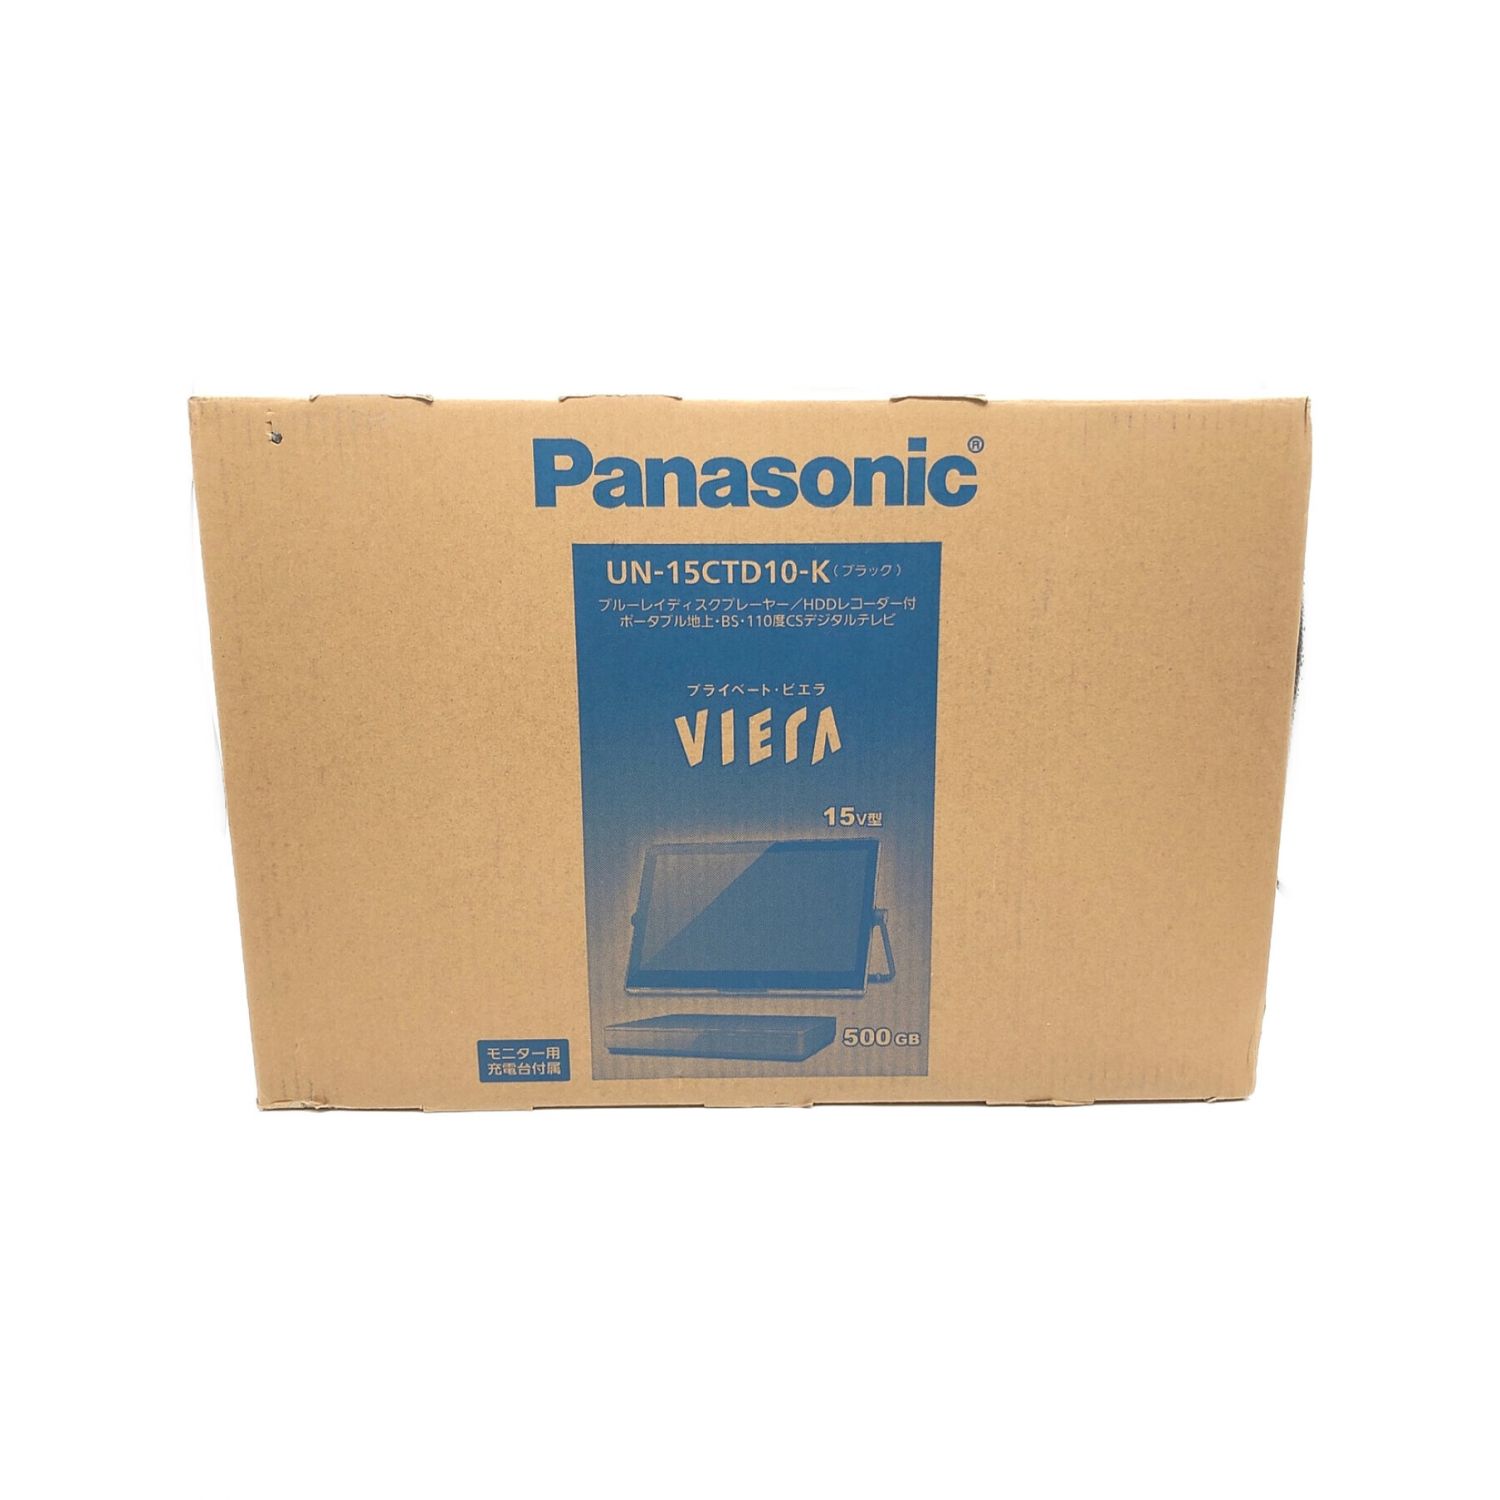 Panasonic (パナソニック) ポータブルテレビ ブルーレイディスクプレーヤー/HDDレコーダー付 UN-15CTD10-K -